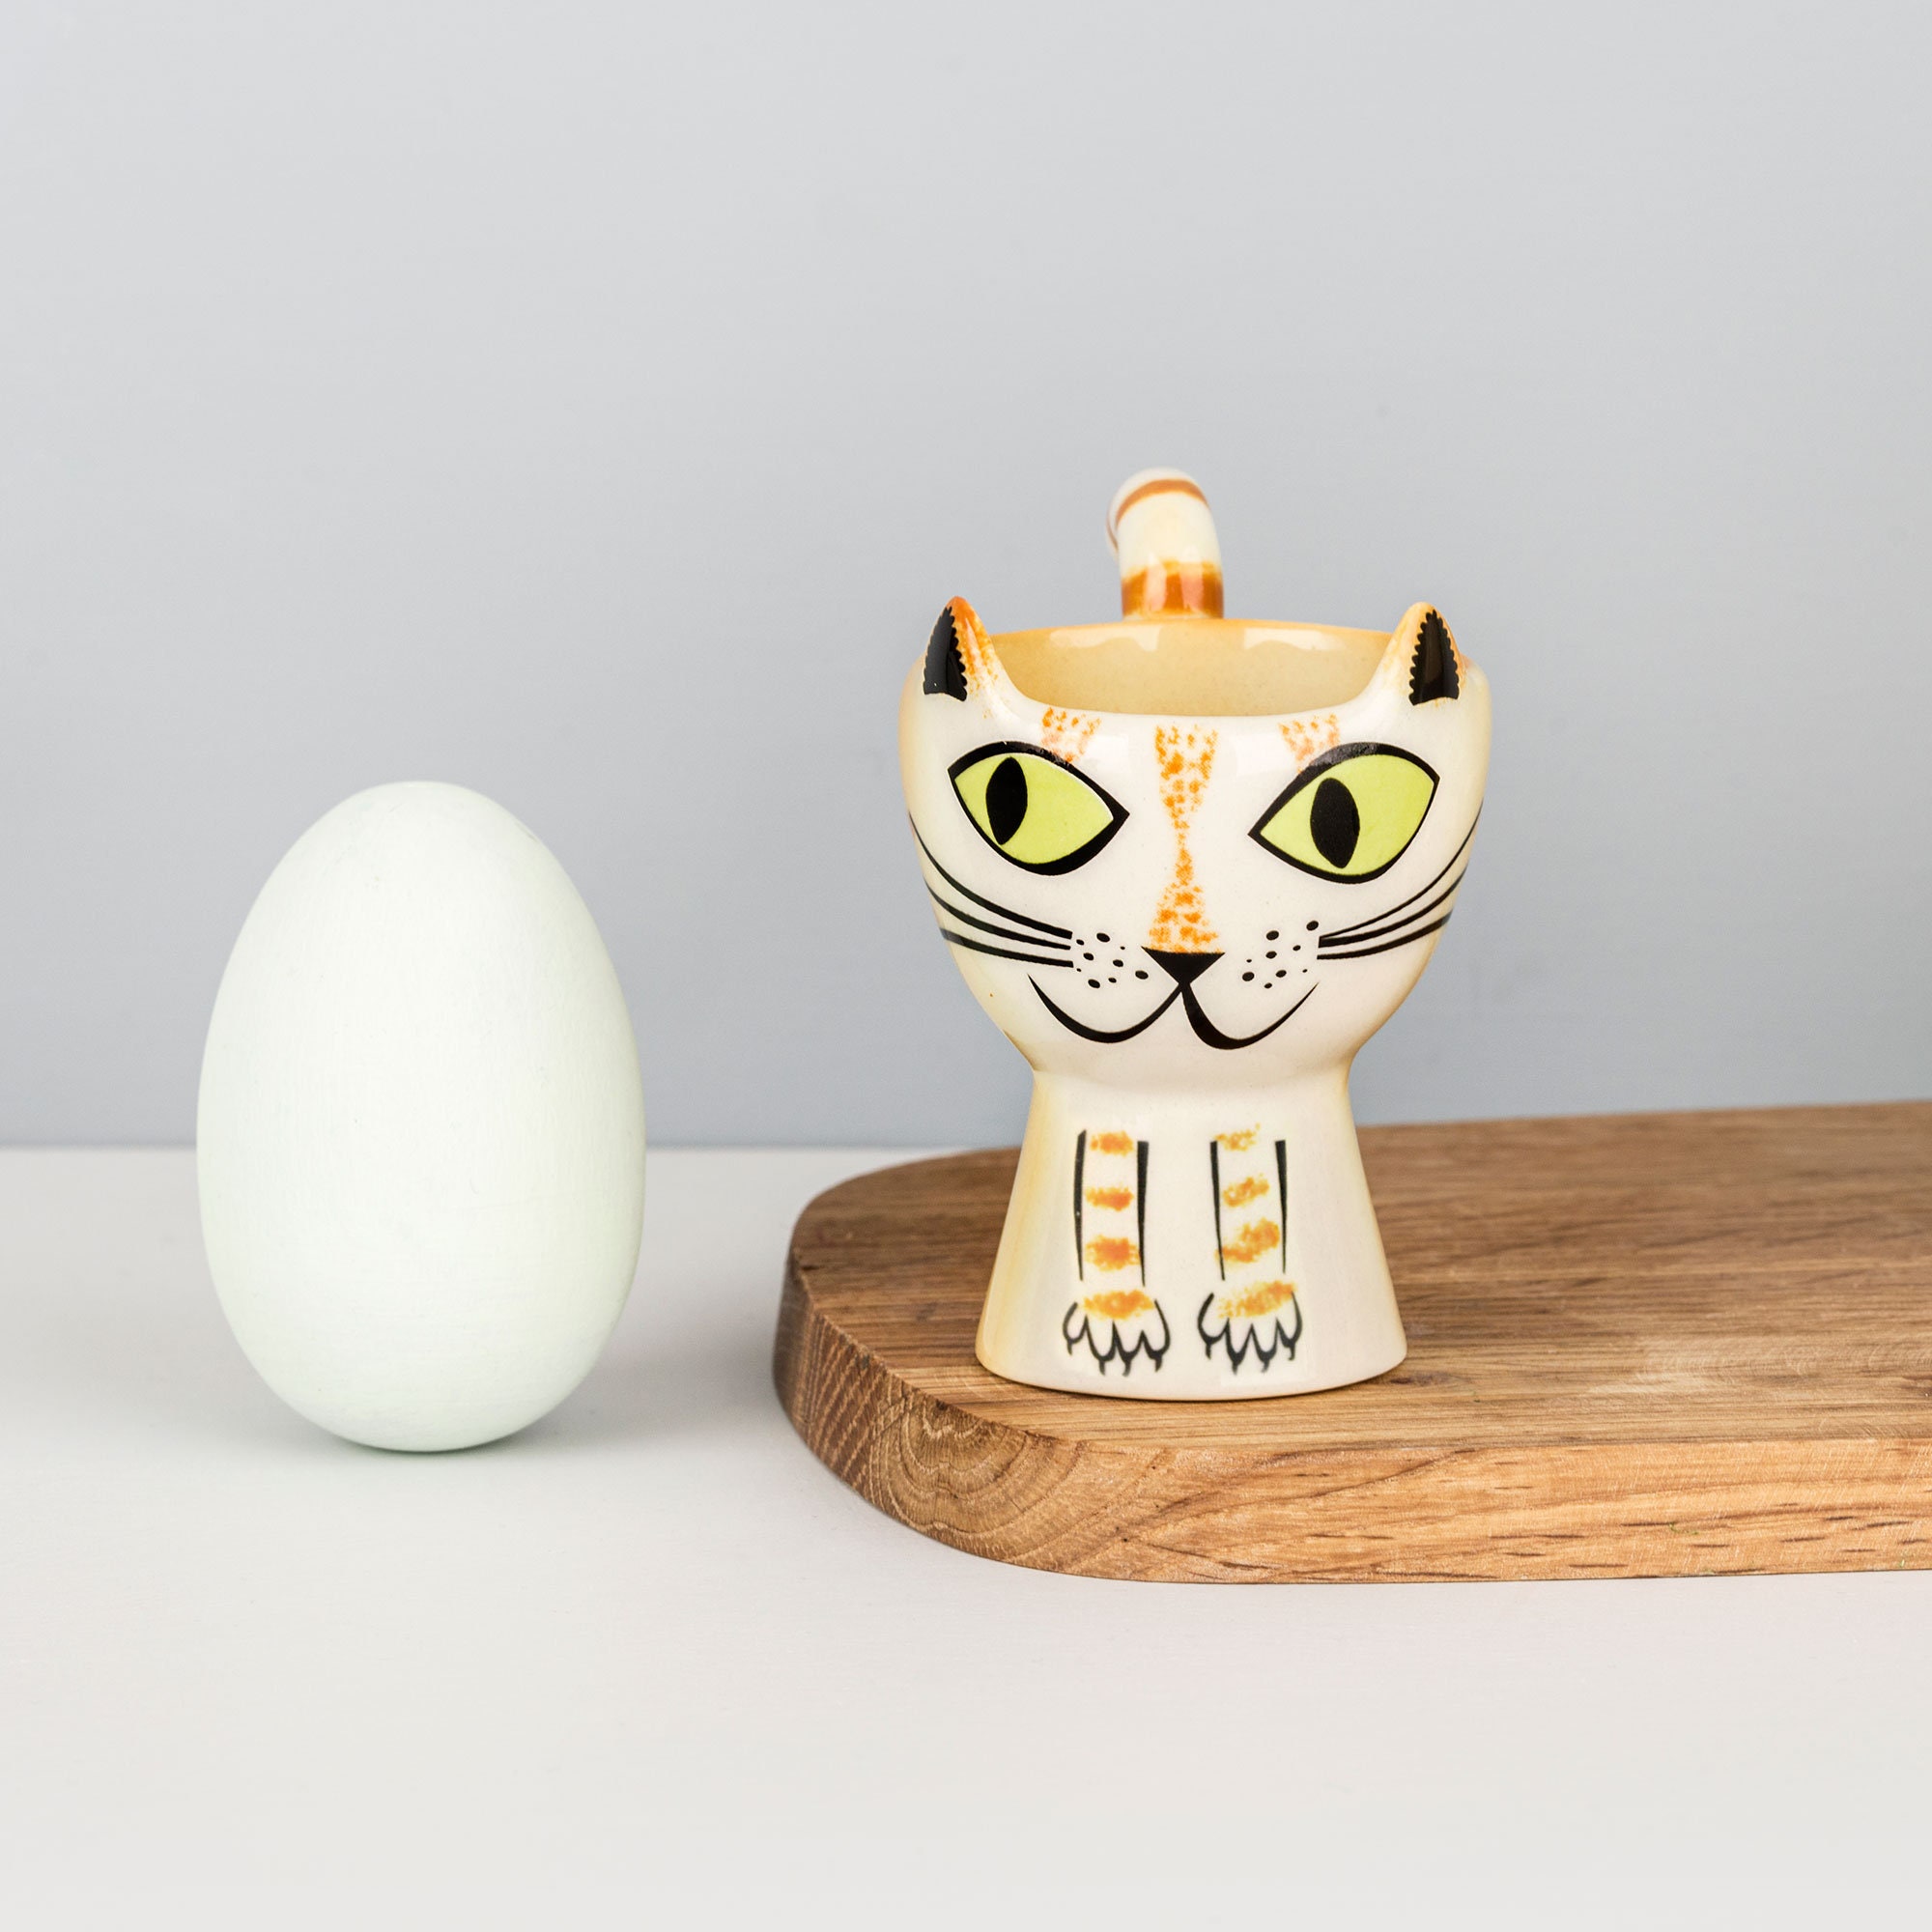 Handmade Ceramic White Swan Egg Cup, Vintage Soft Boiled Egg